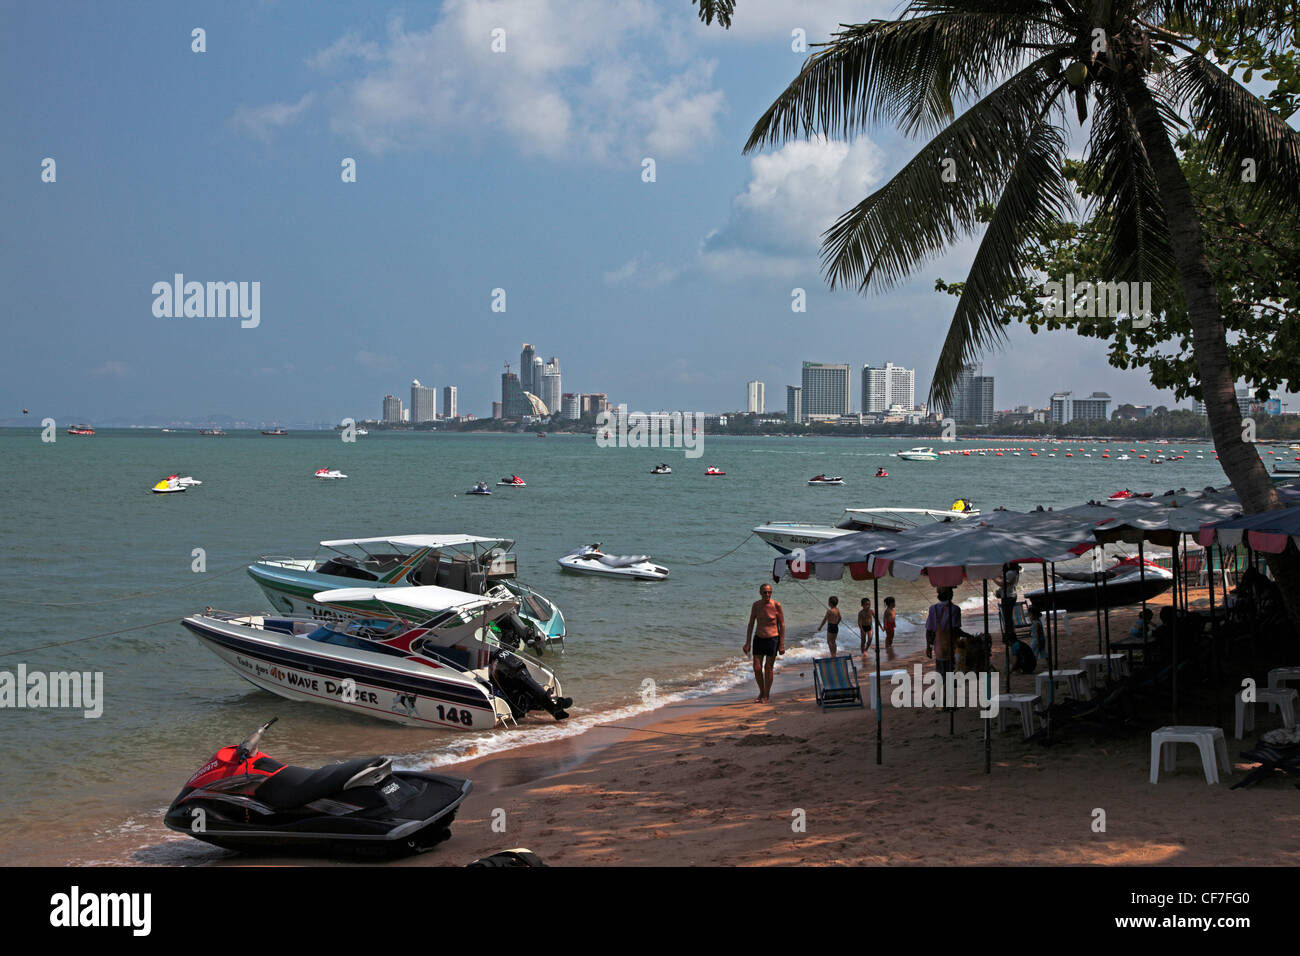 La playa de Pattaya, Tailandia Foto de stock